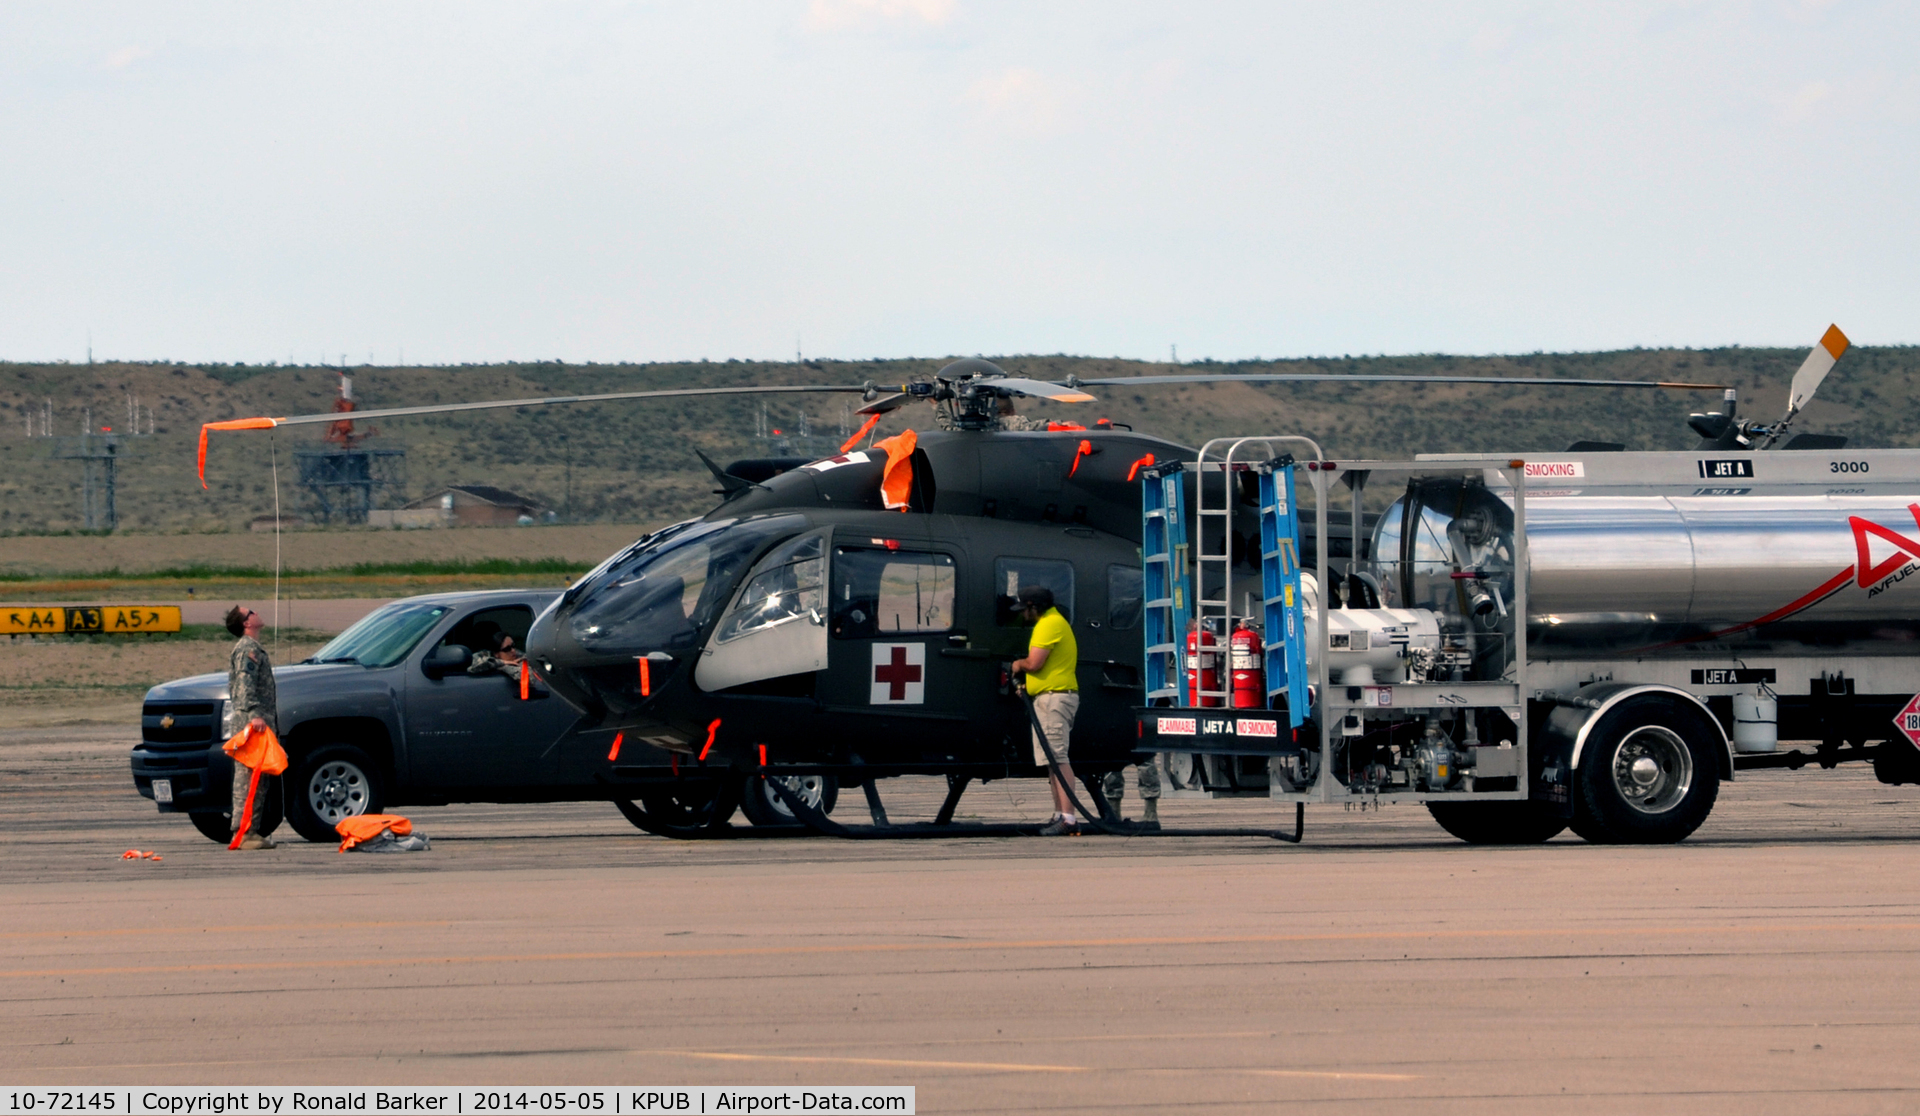 10-72145, 2010 Eurocopter UH-72A Lakota C/N 9381, Lakota being serviced at Pueblo